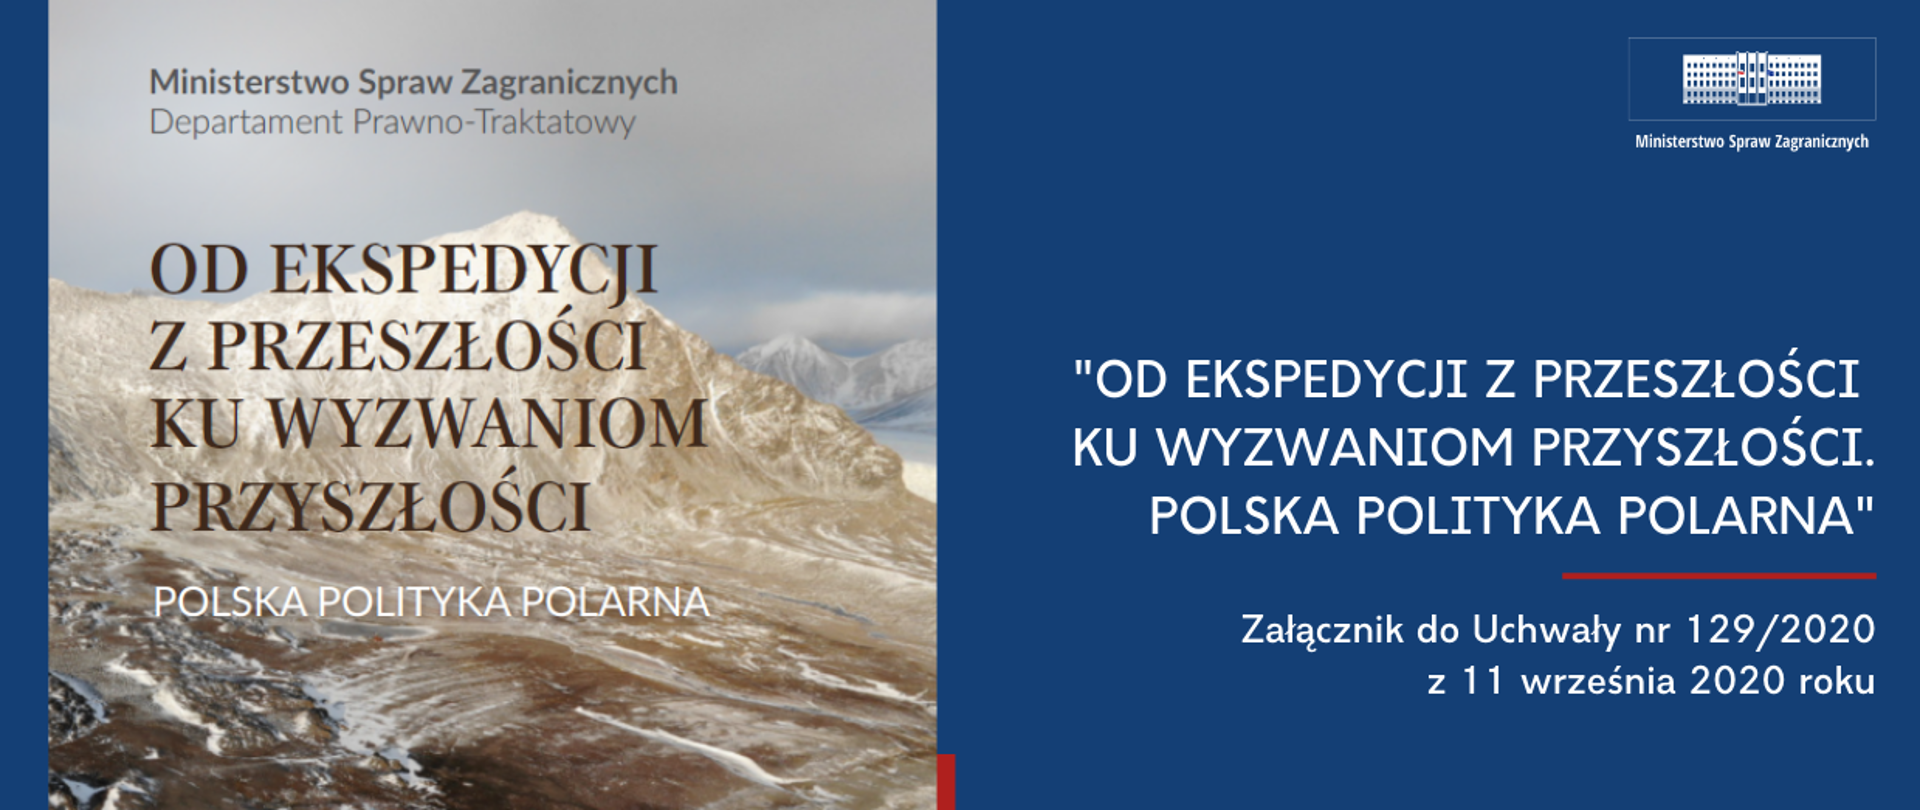 Polska polityka polarna - Załącznik do Uchwały nr 129/2020 z 11 września 2020 roku - okładka